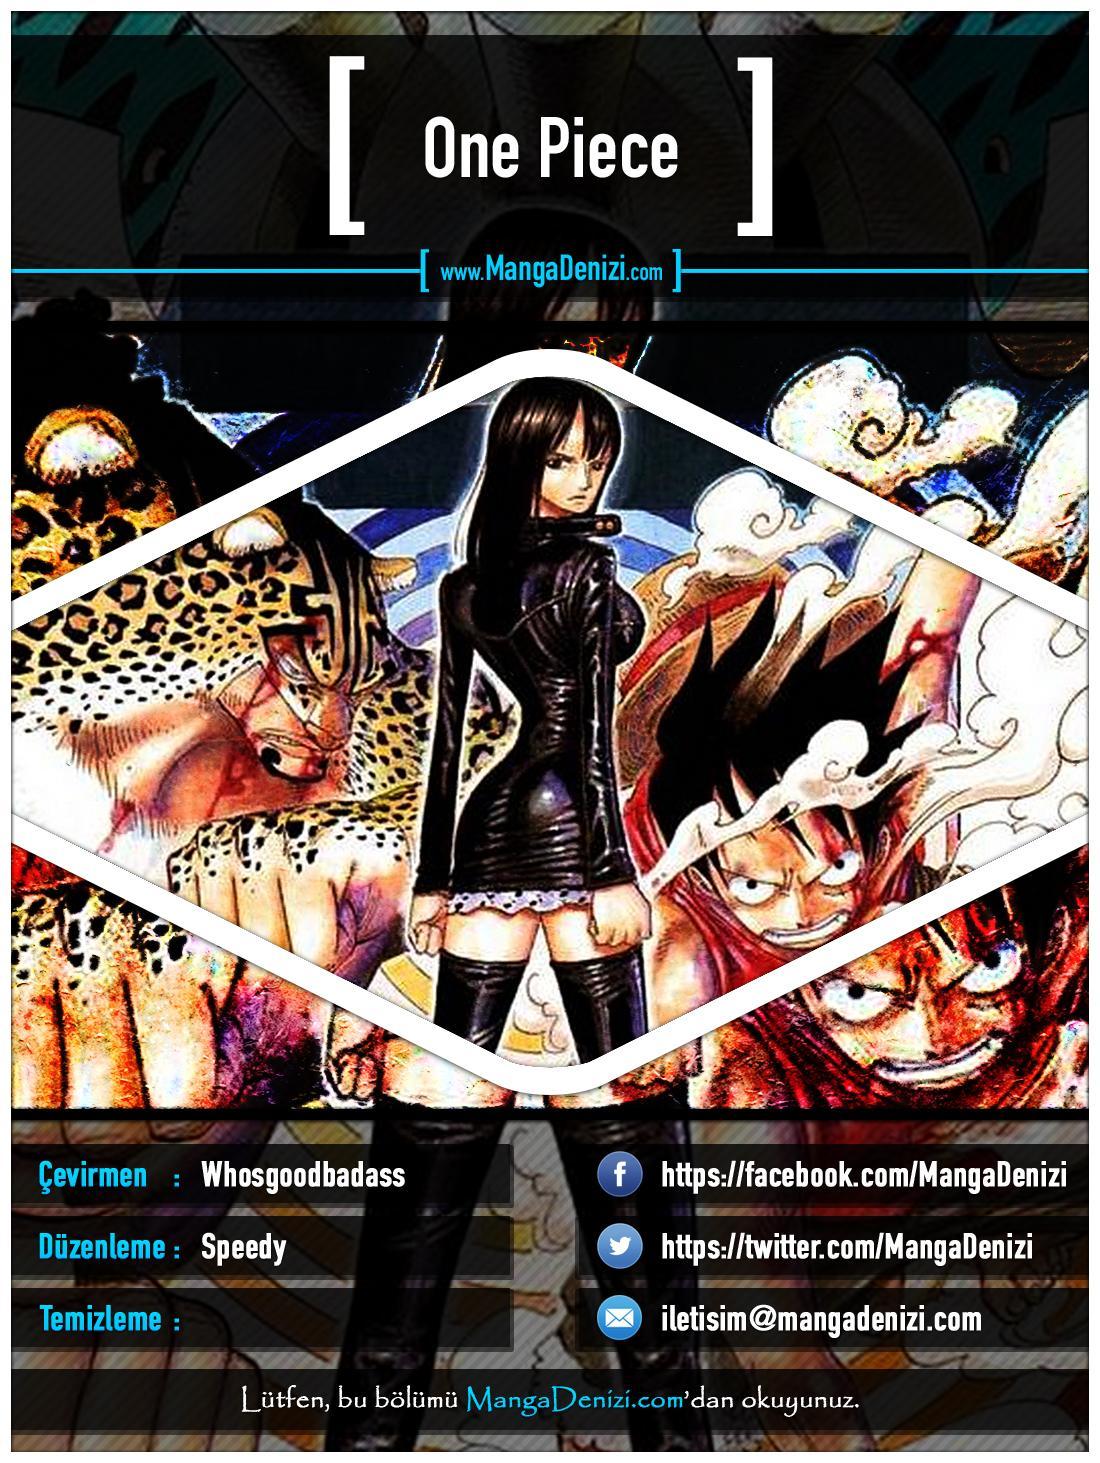 One Piece [Renkli] mangasının 0329 bölümünün 1. sayfasını okuyorsunuz.